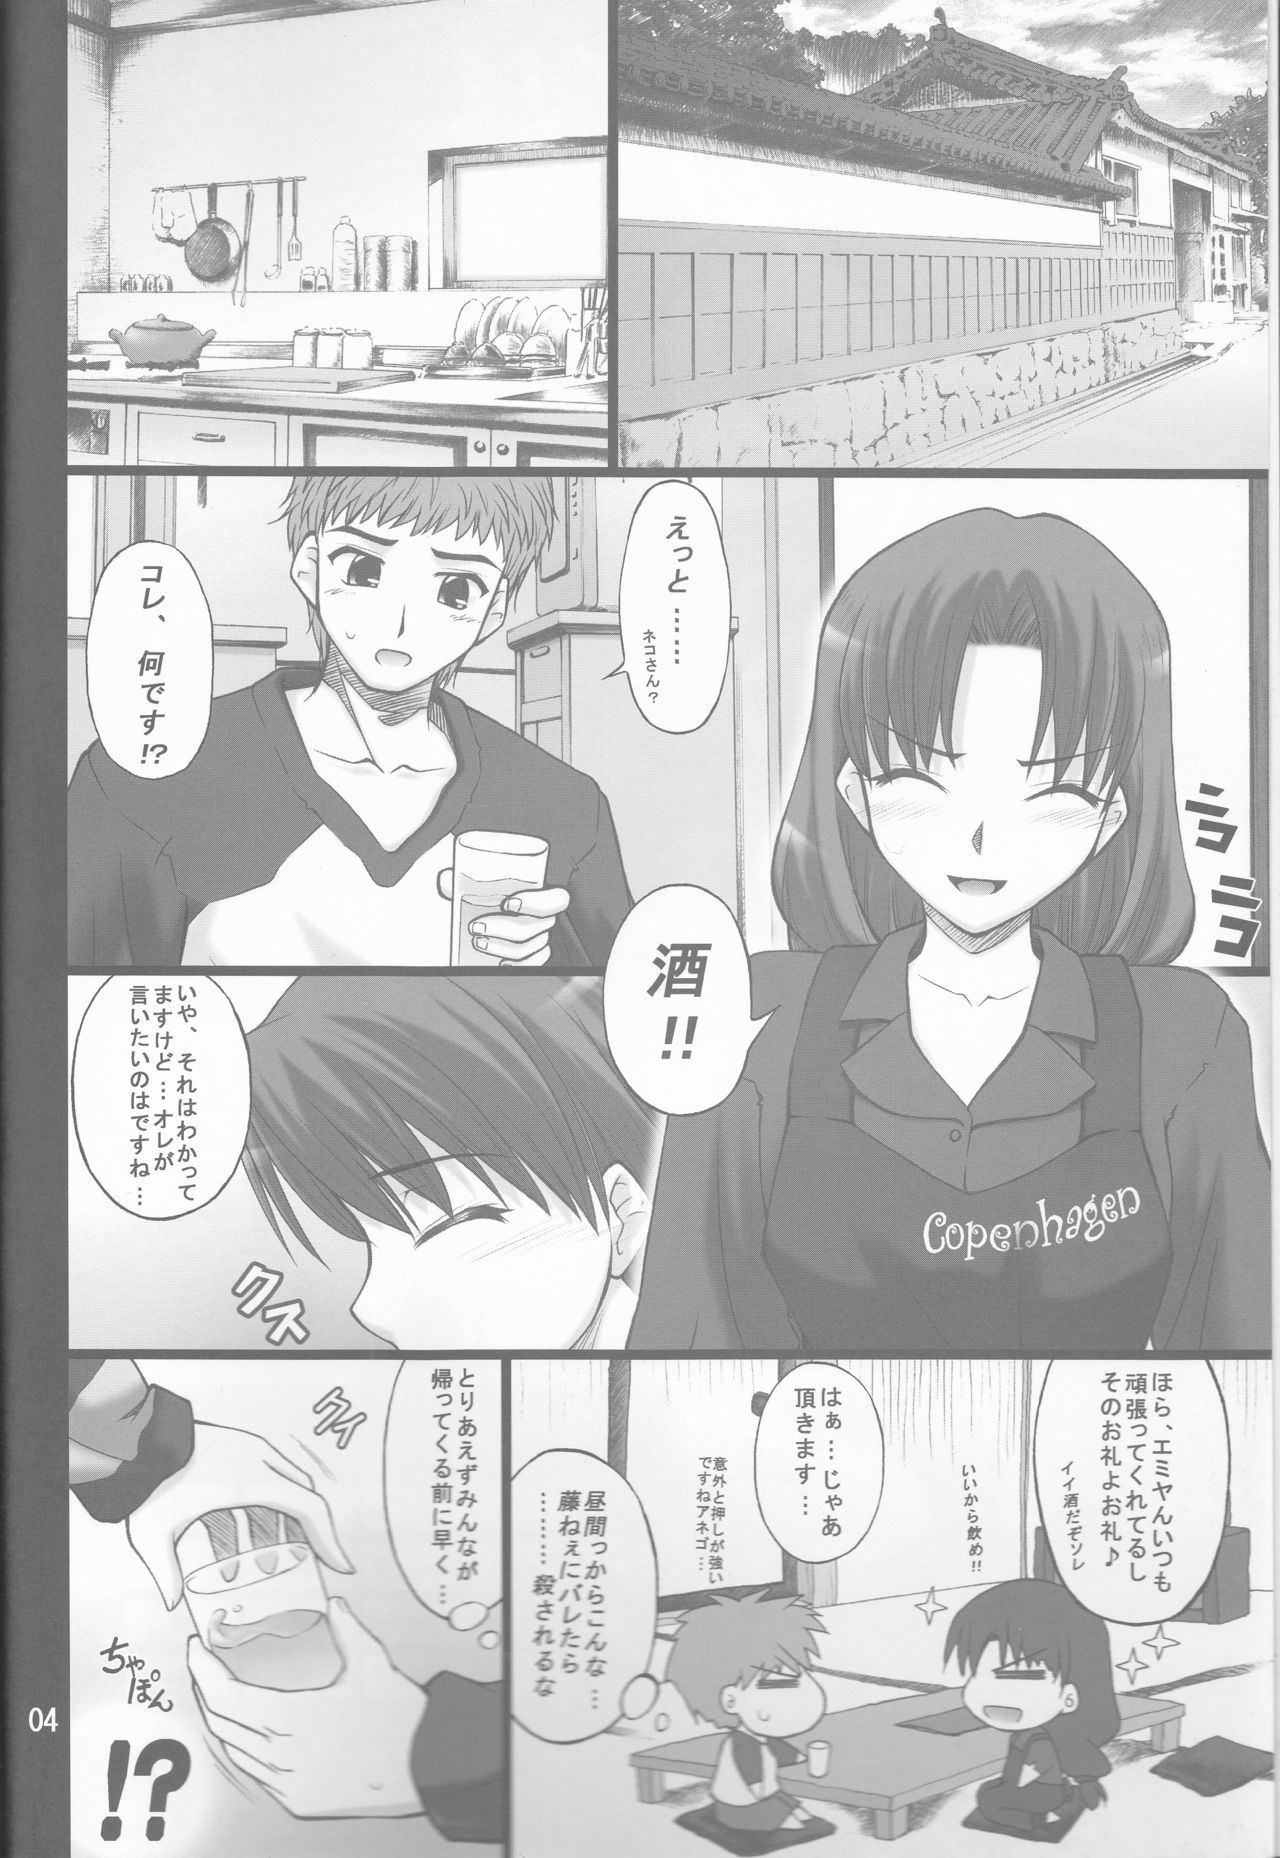 (COMIC1) [ぷり桃 (ごやっち)] ネコトラ -ネコ科のお姉さんは好きですか?- (Fate/stay night)